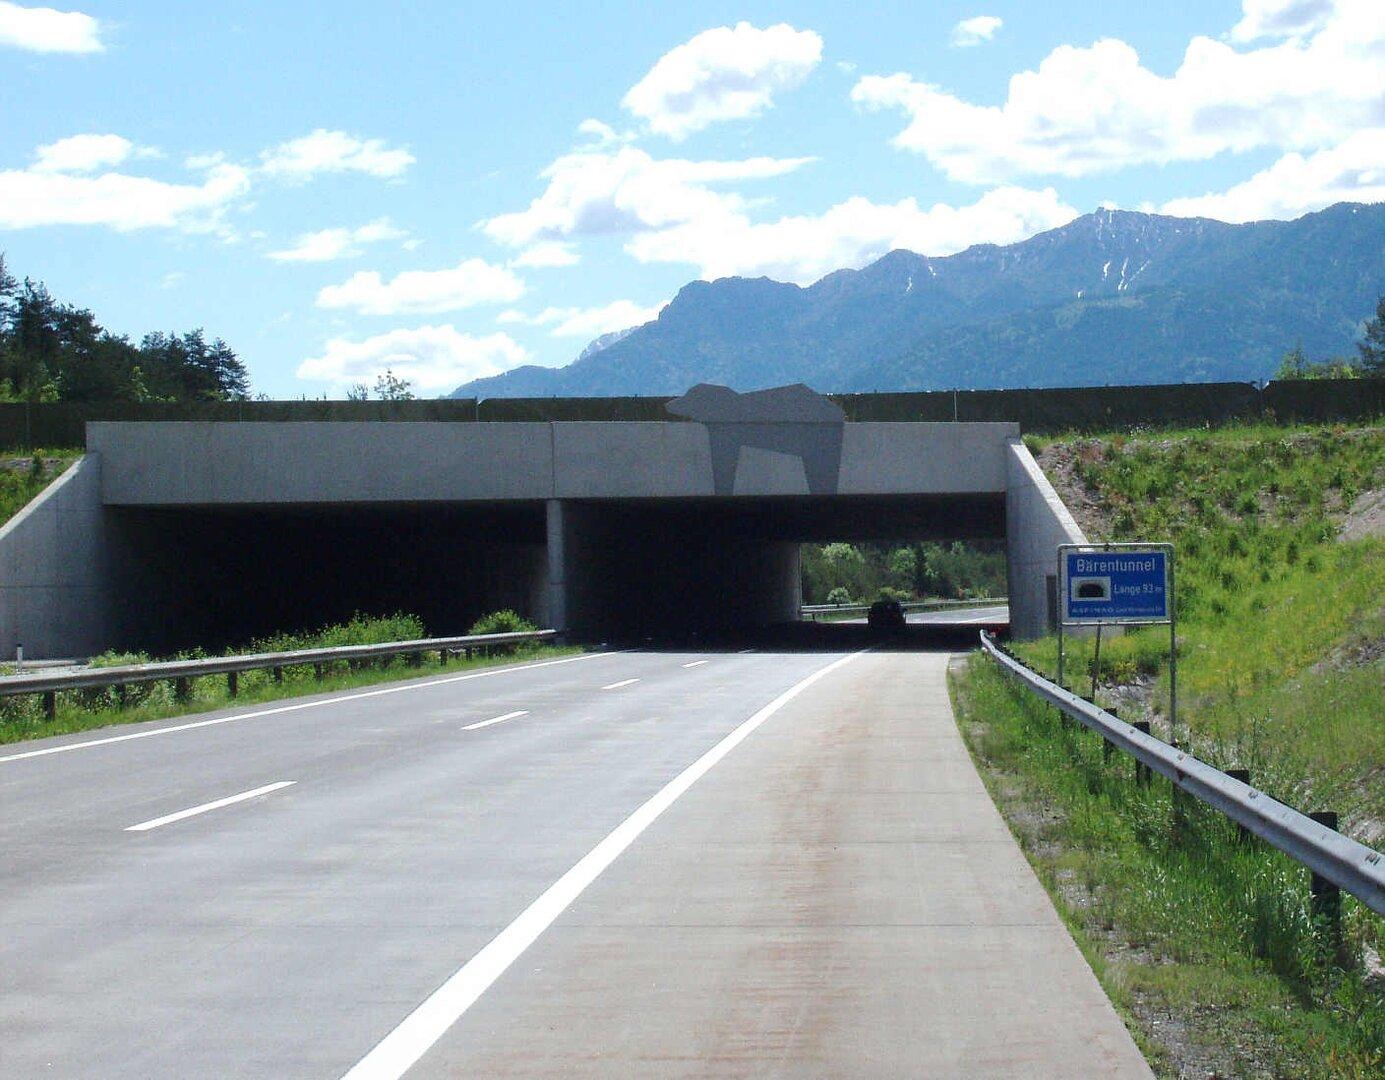 nur 80 meter: die kürzeste autobahn österreichs wurde eröffnet